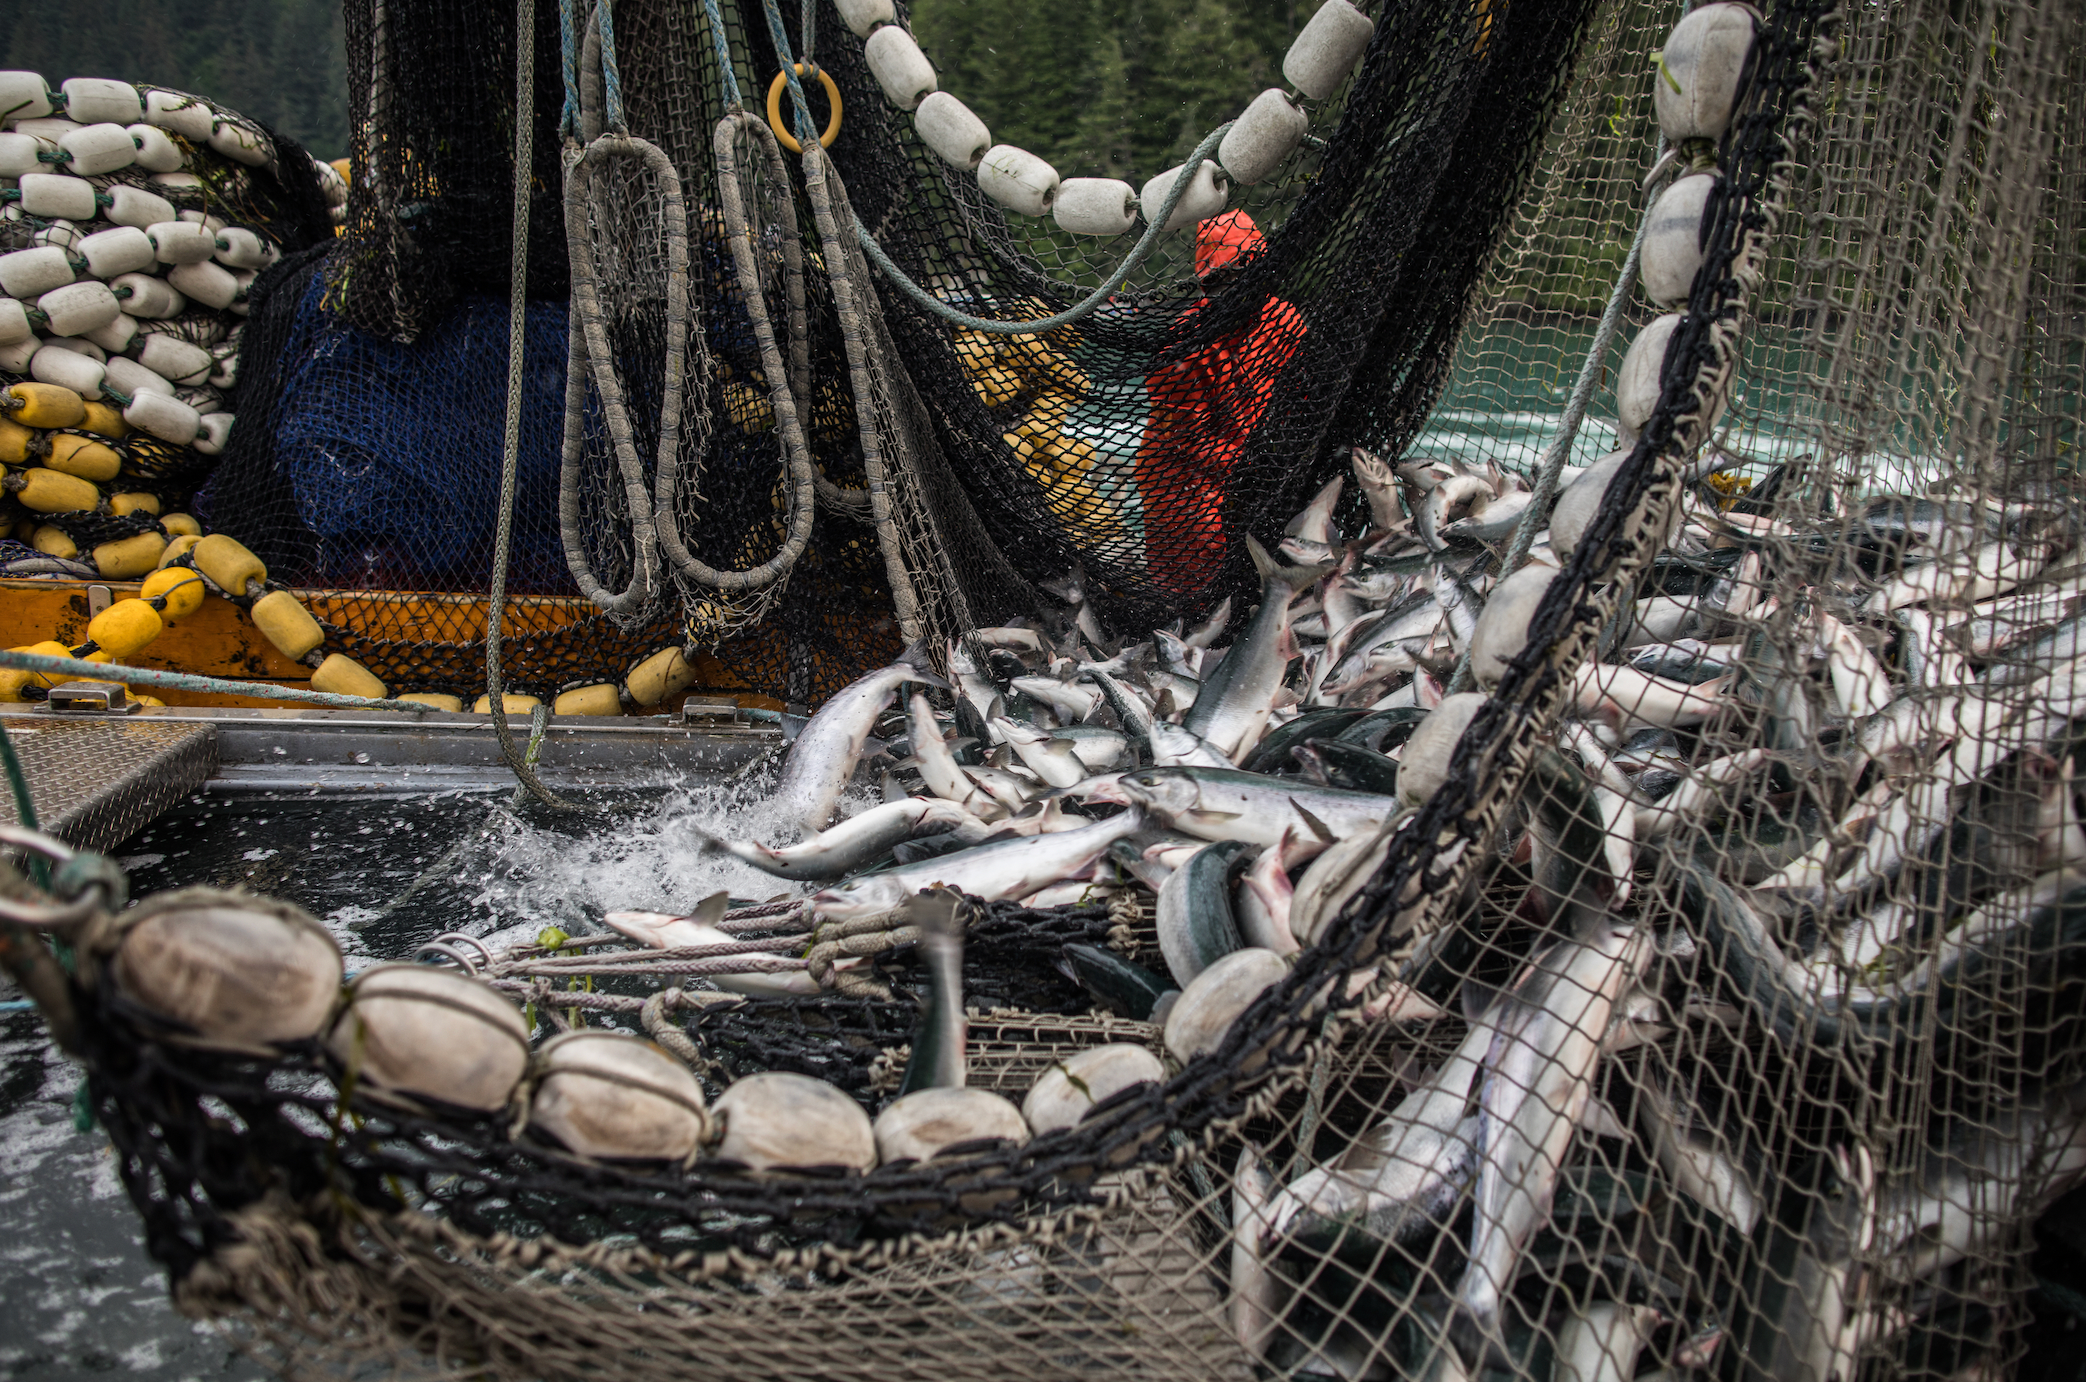 Sustainable Fish to Eat  Marine Stewardship Council